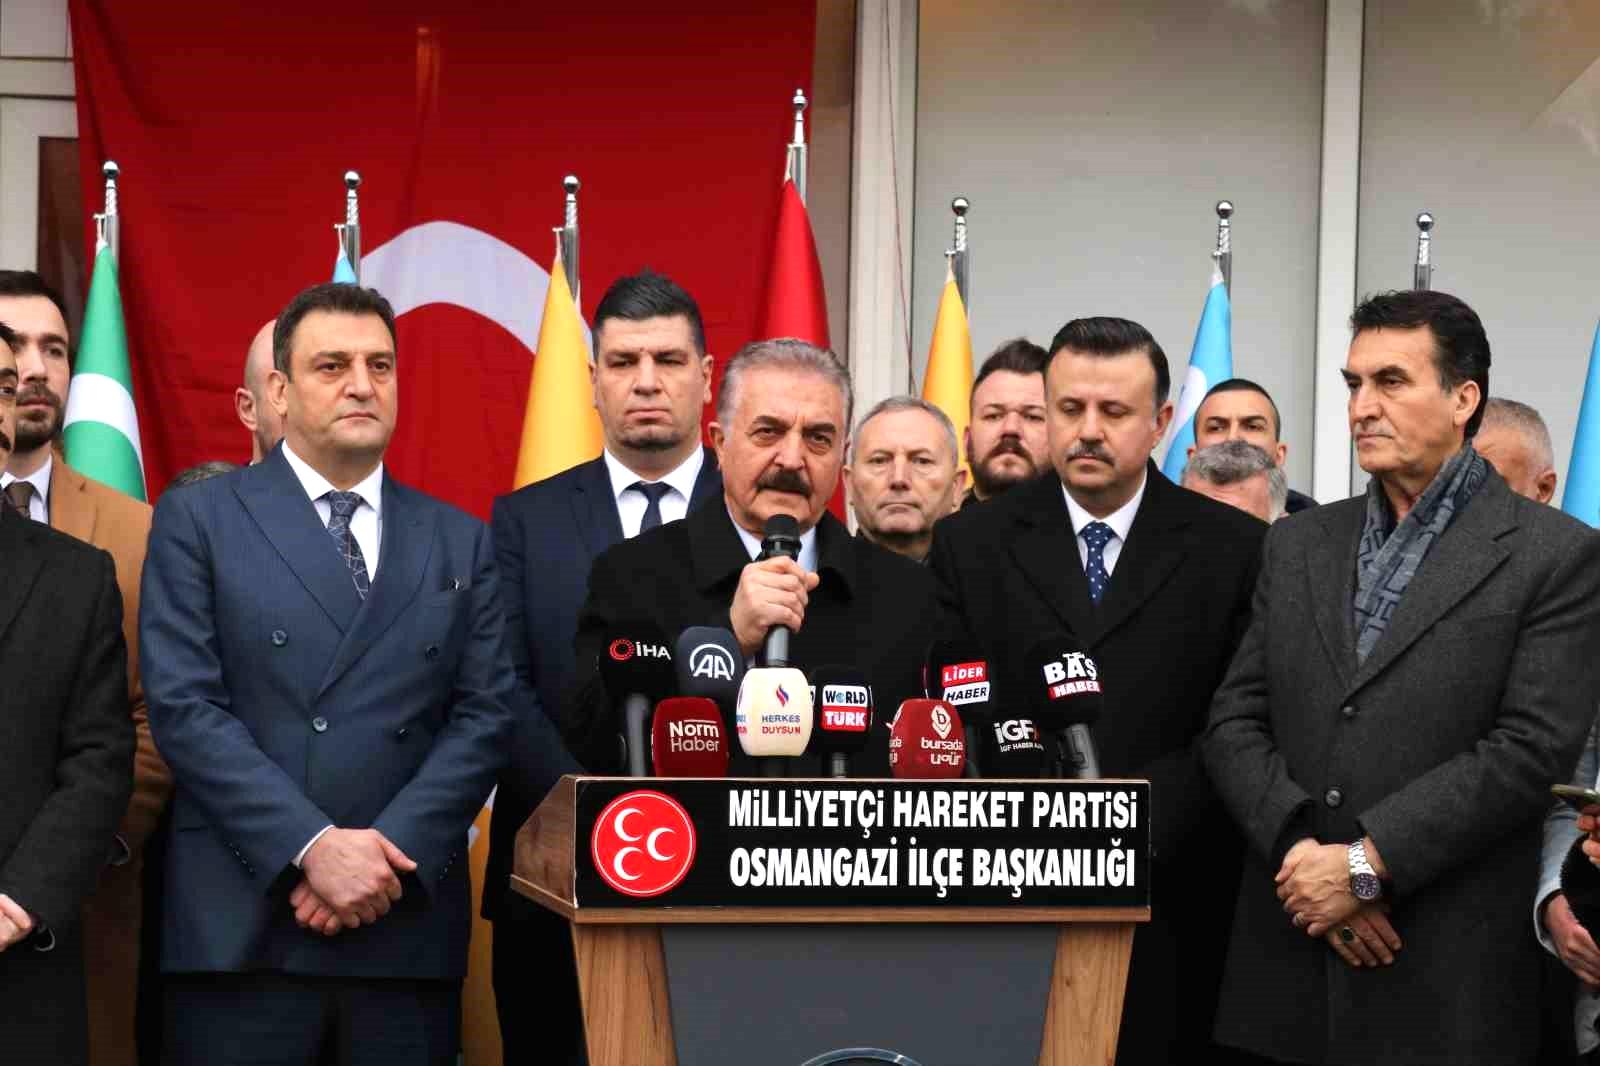 MHP’li Büyükataman: “Türkiye Cumhuriyeti bir hukuk devleti değilmişçesine, talimatlar çerçevesinde yine harekete geçildi”